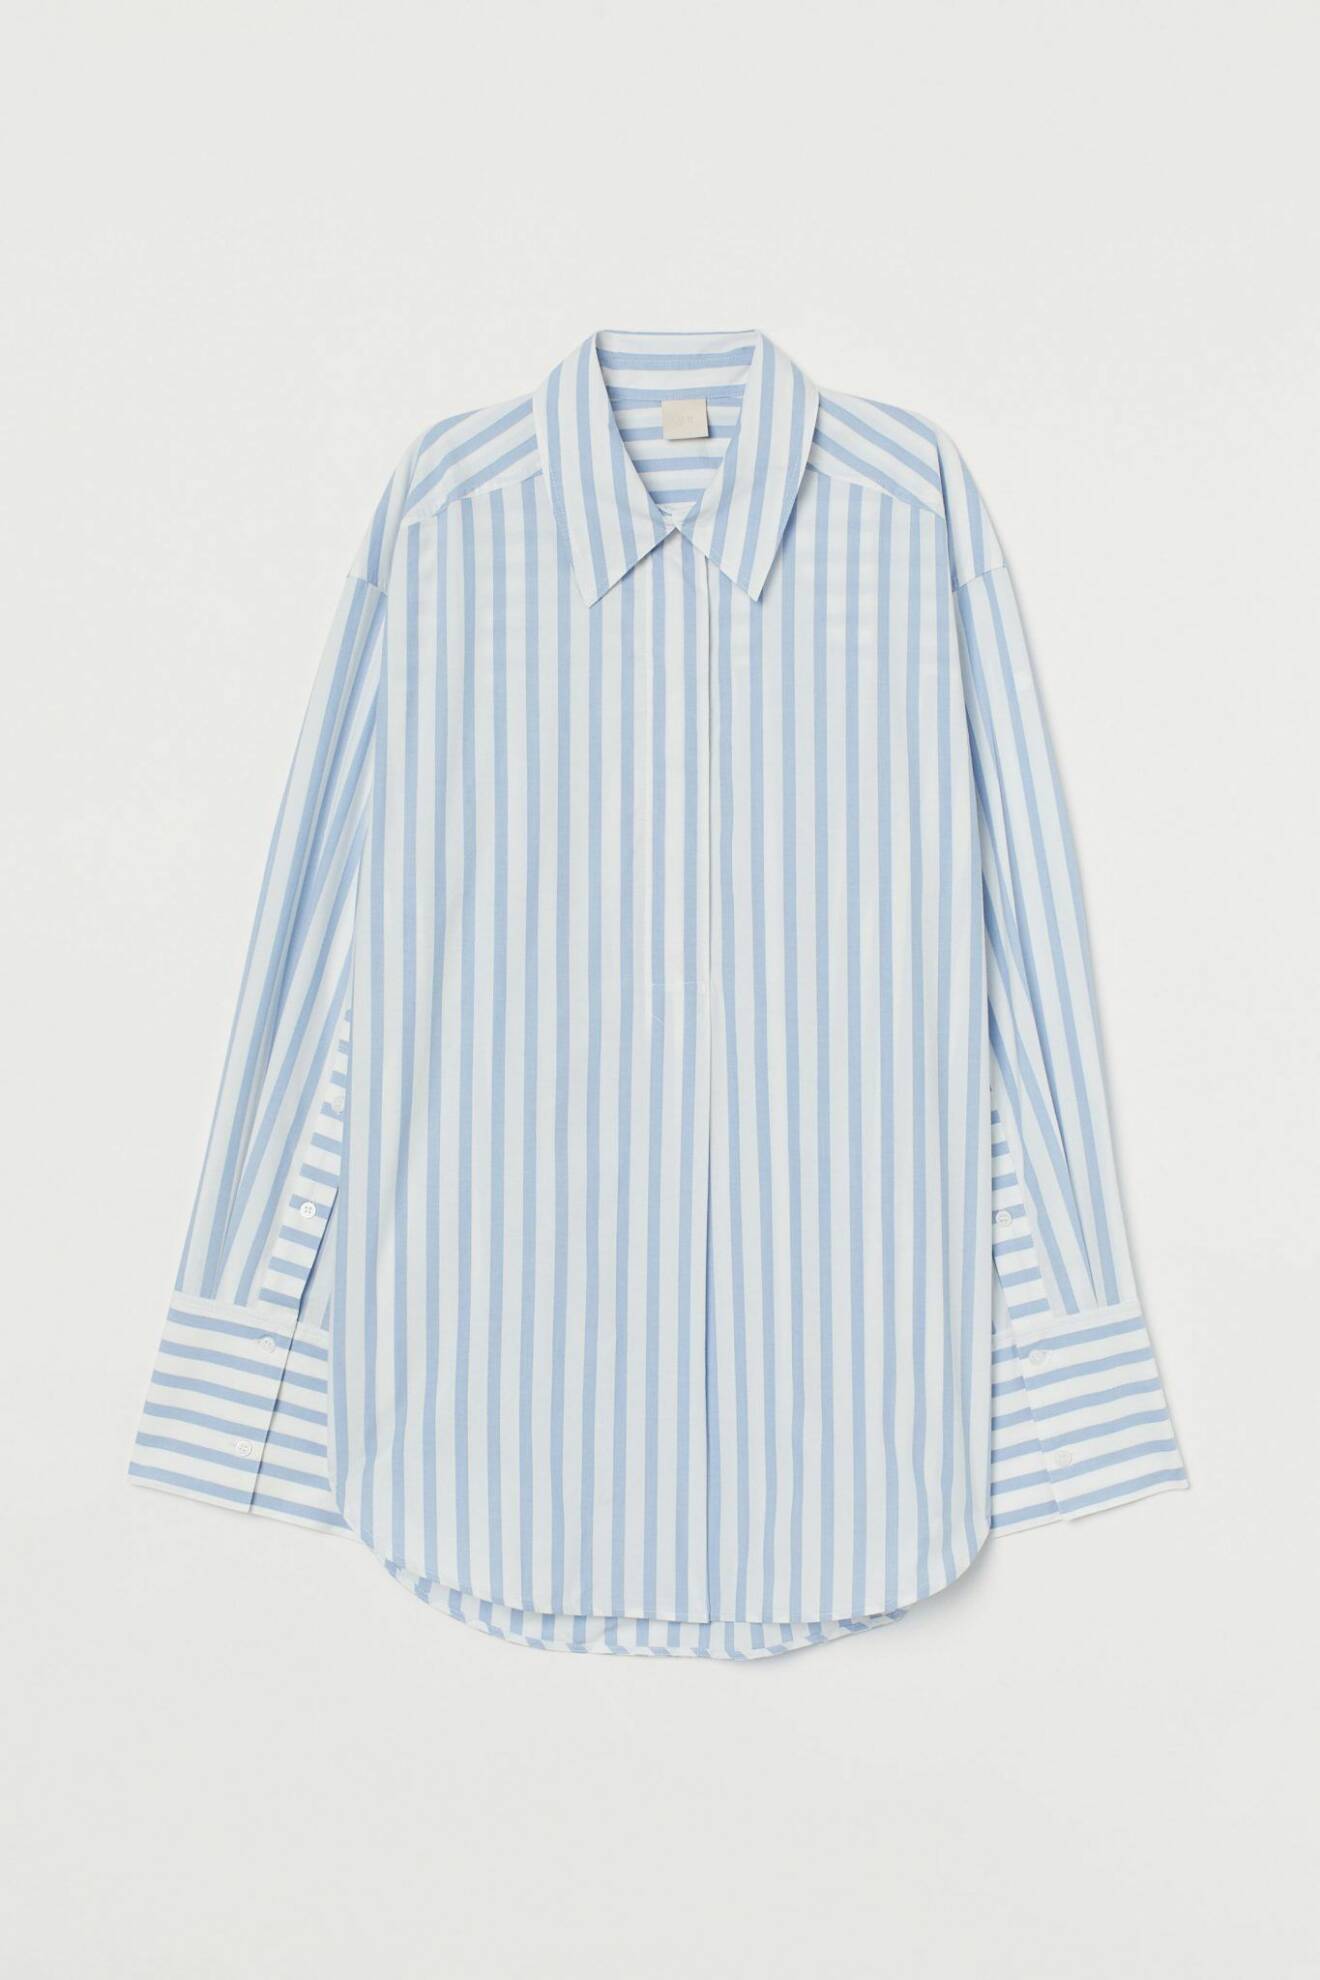 Skjorta i oversized modell med voluminösa ärmar och blå/vita räder från H&M.